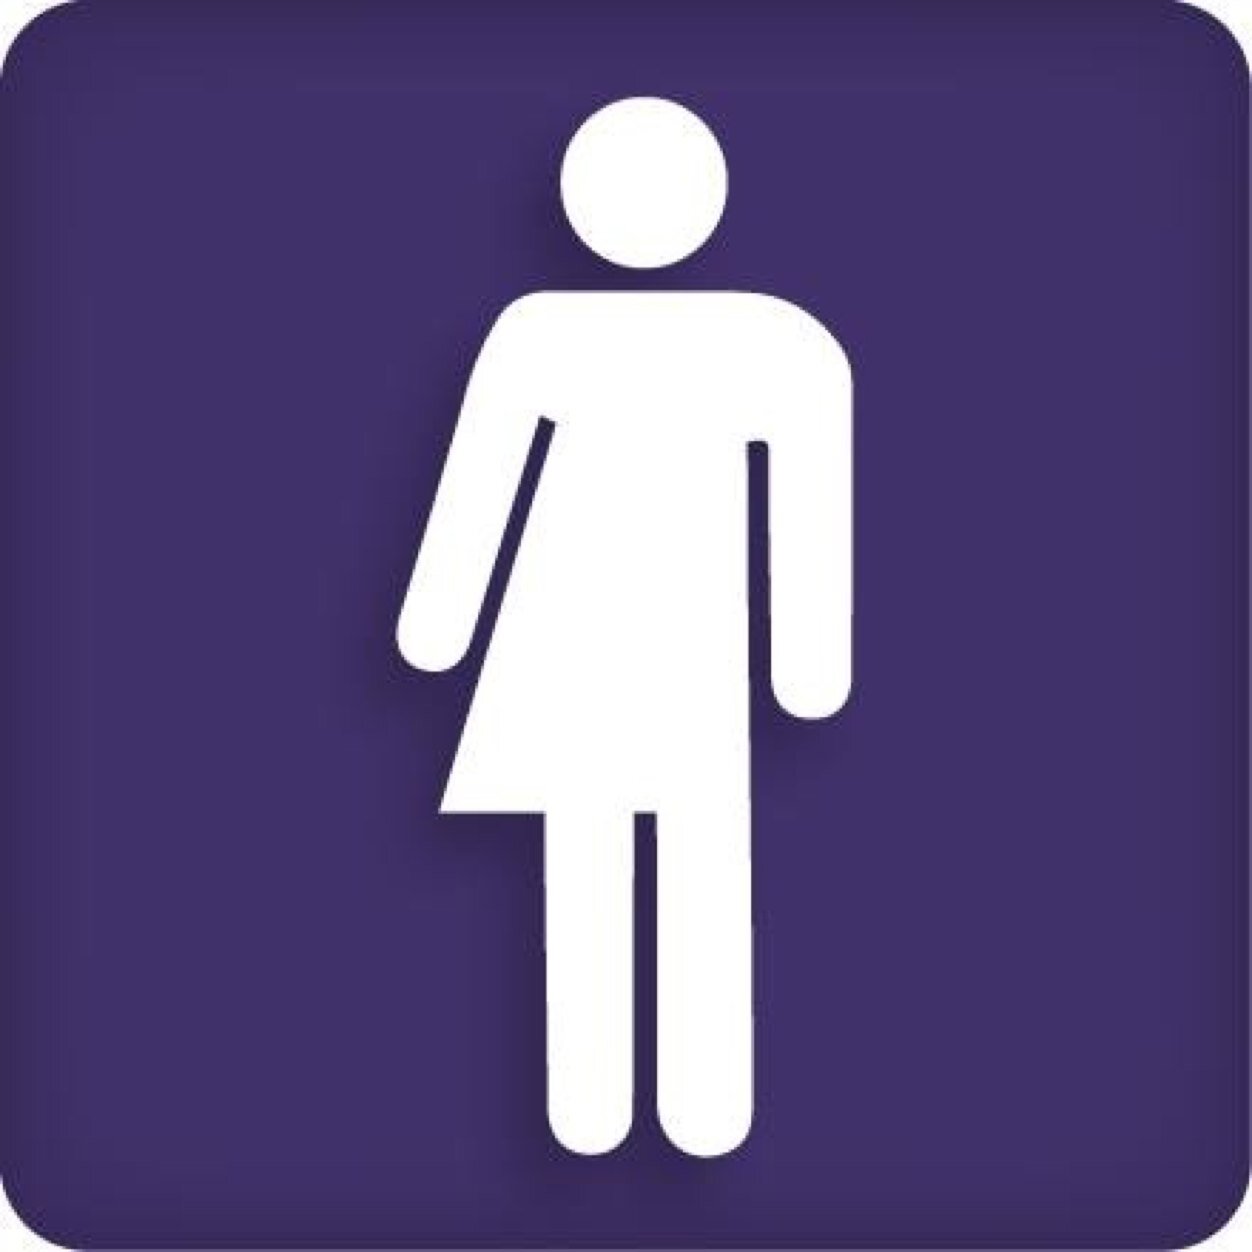 REFUGE restrooms (@REFUGErestrooms) | Twitter